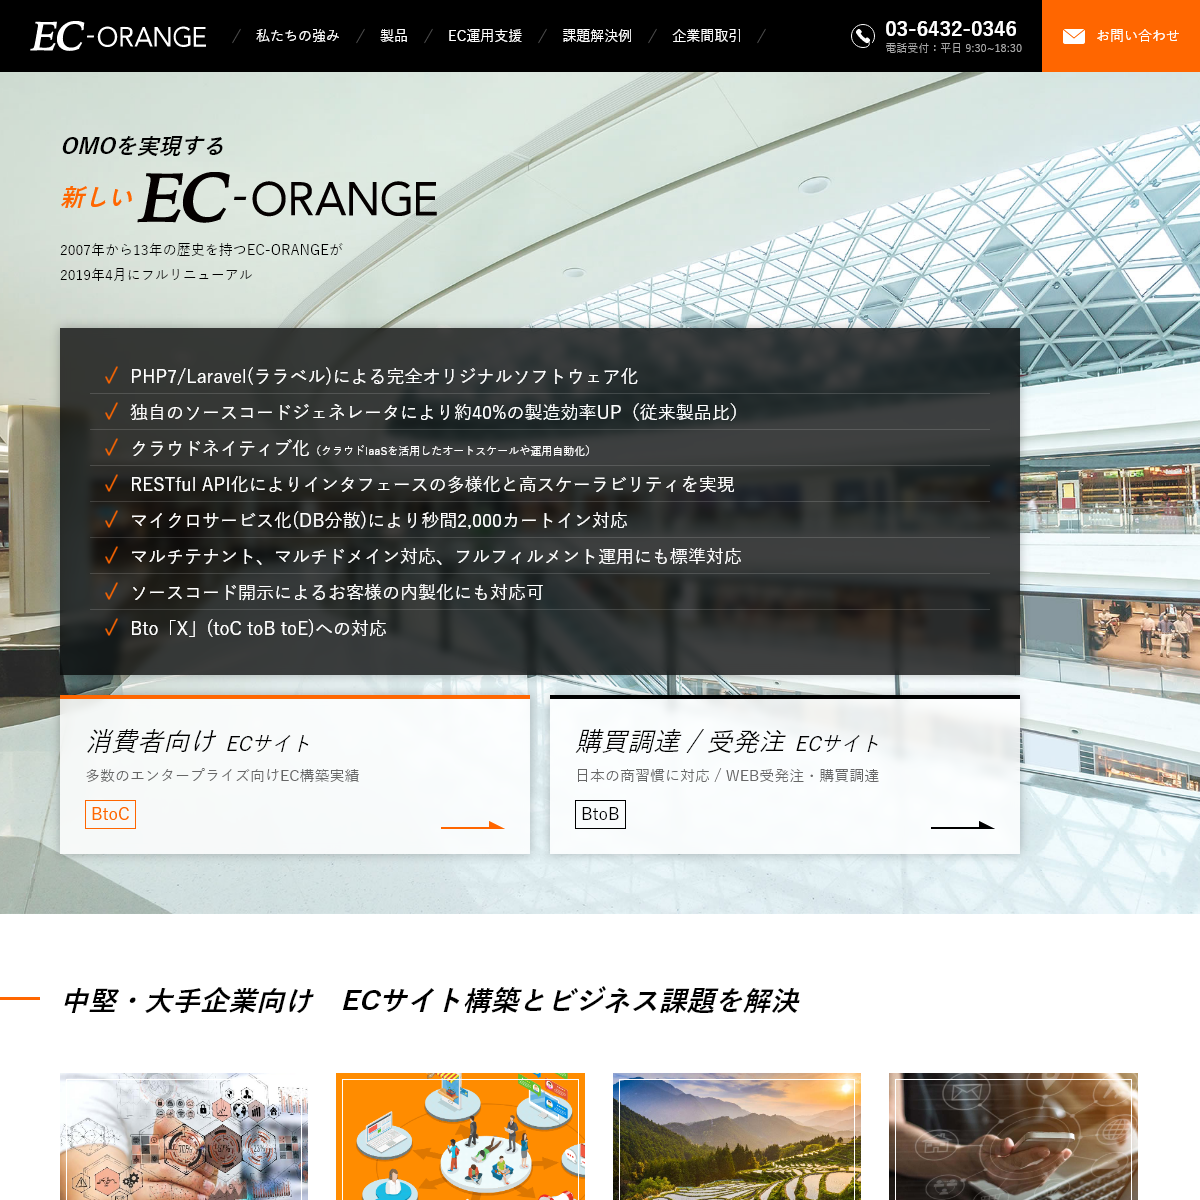 A complete backup of ec-orange.jp